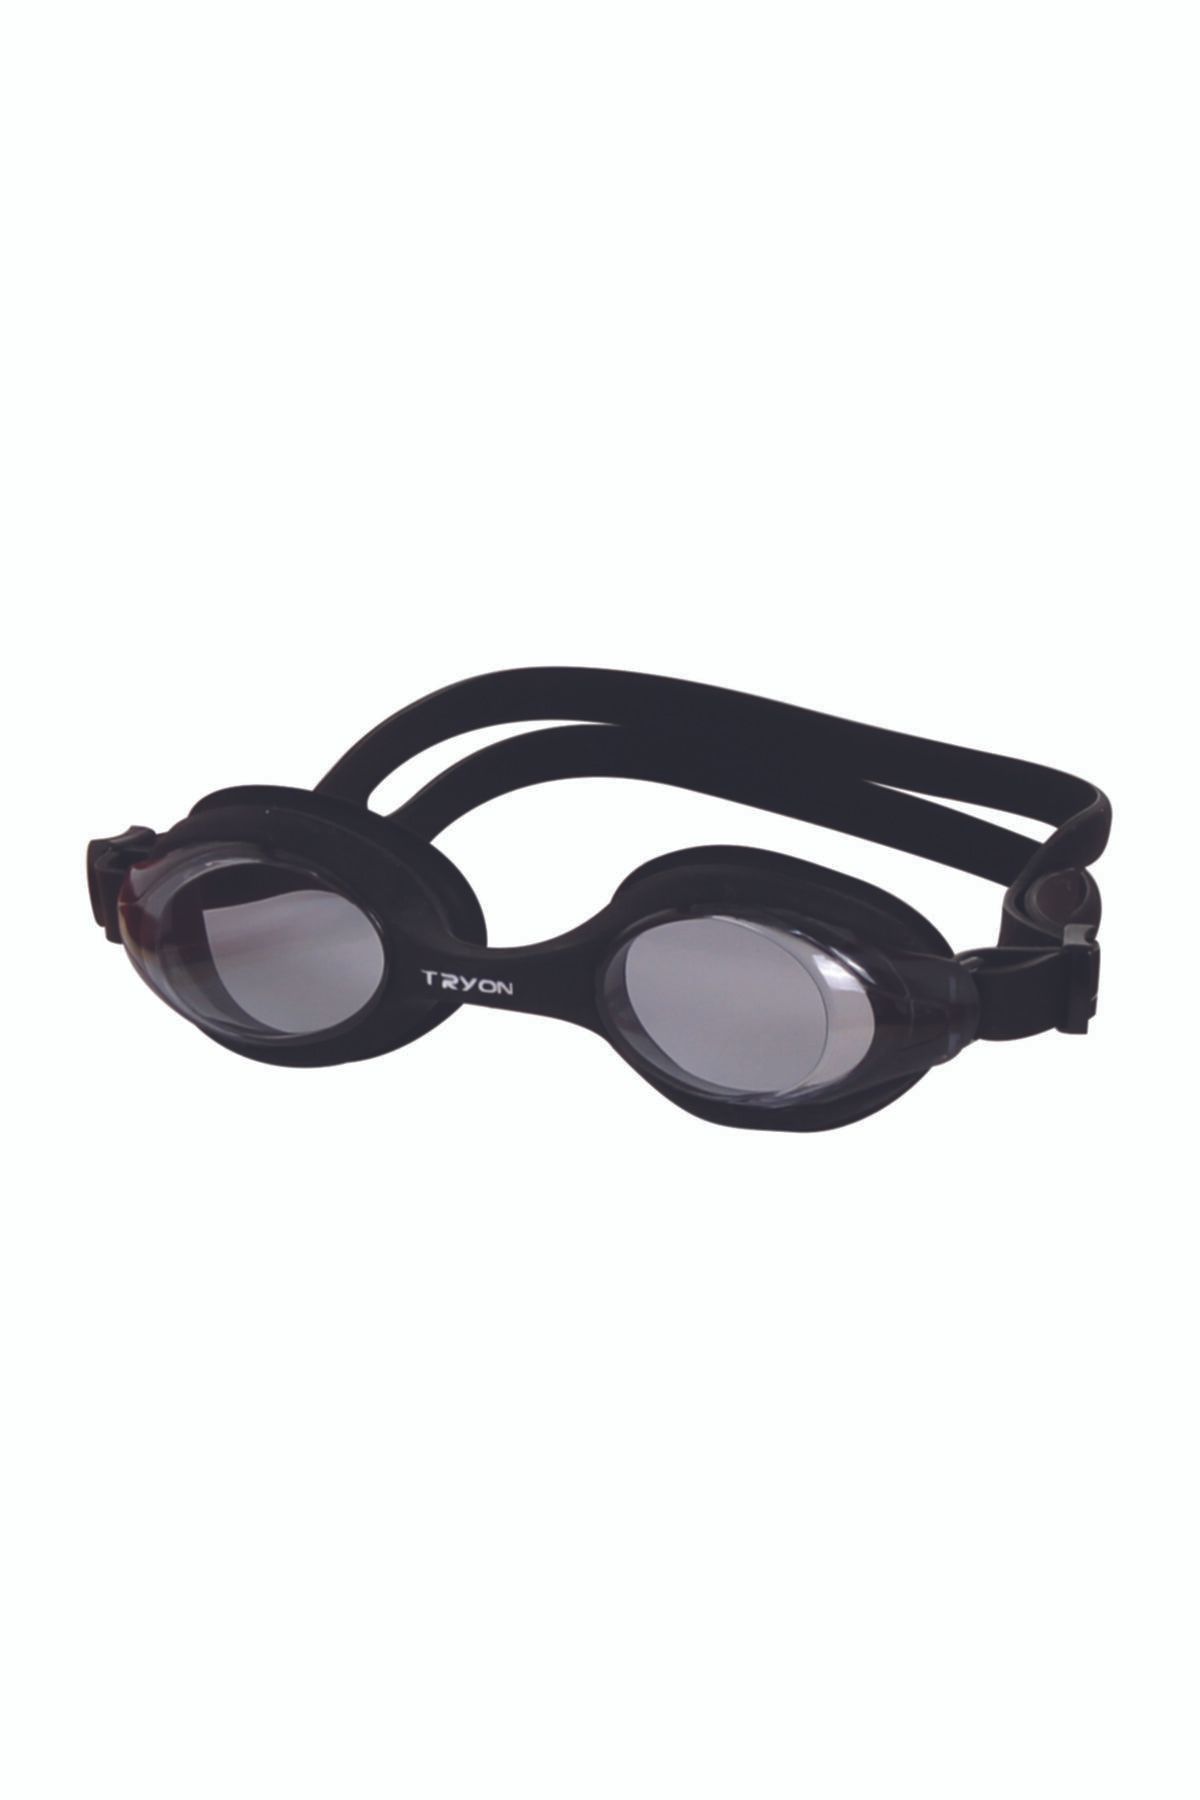 TRYON Yüzücü Gözlüğü Yg400